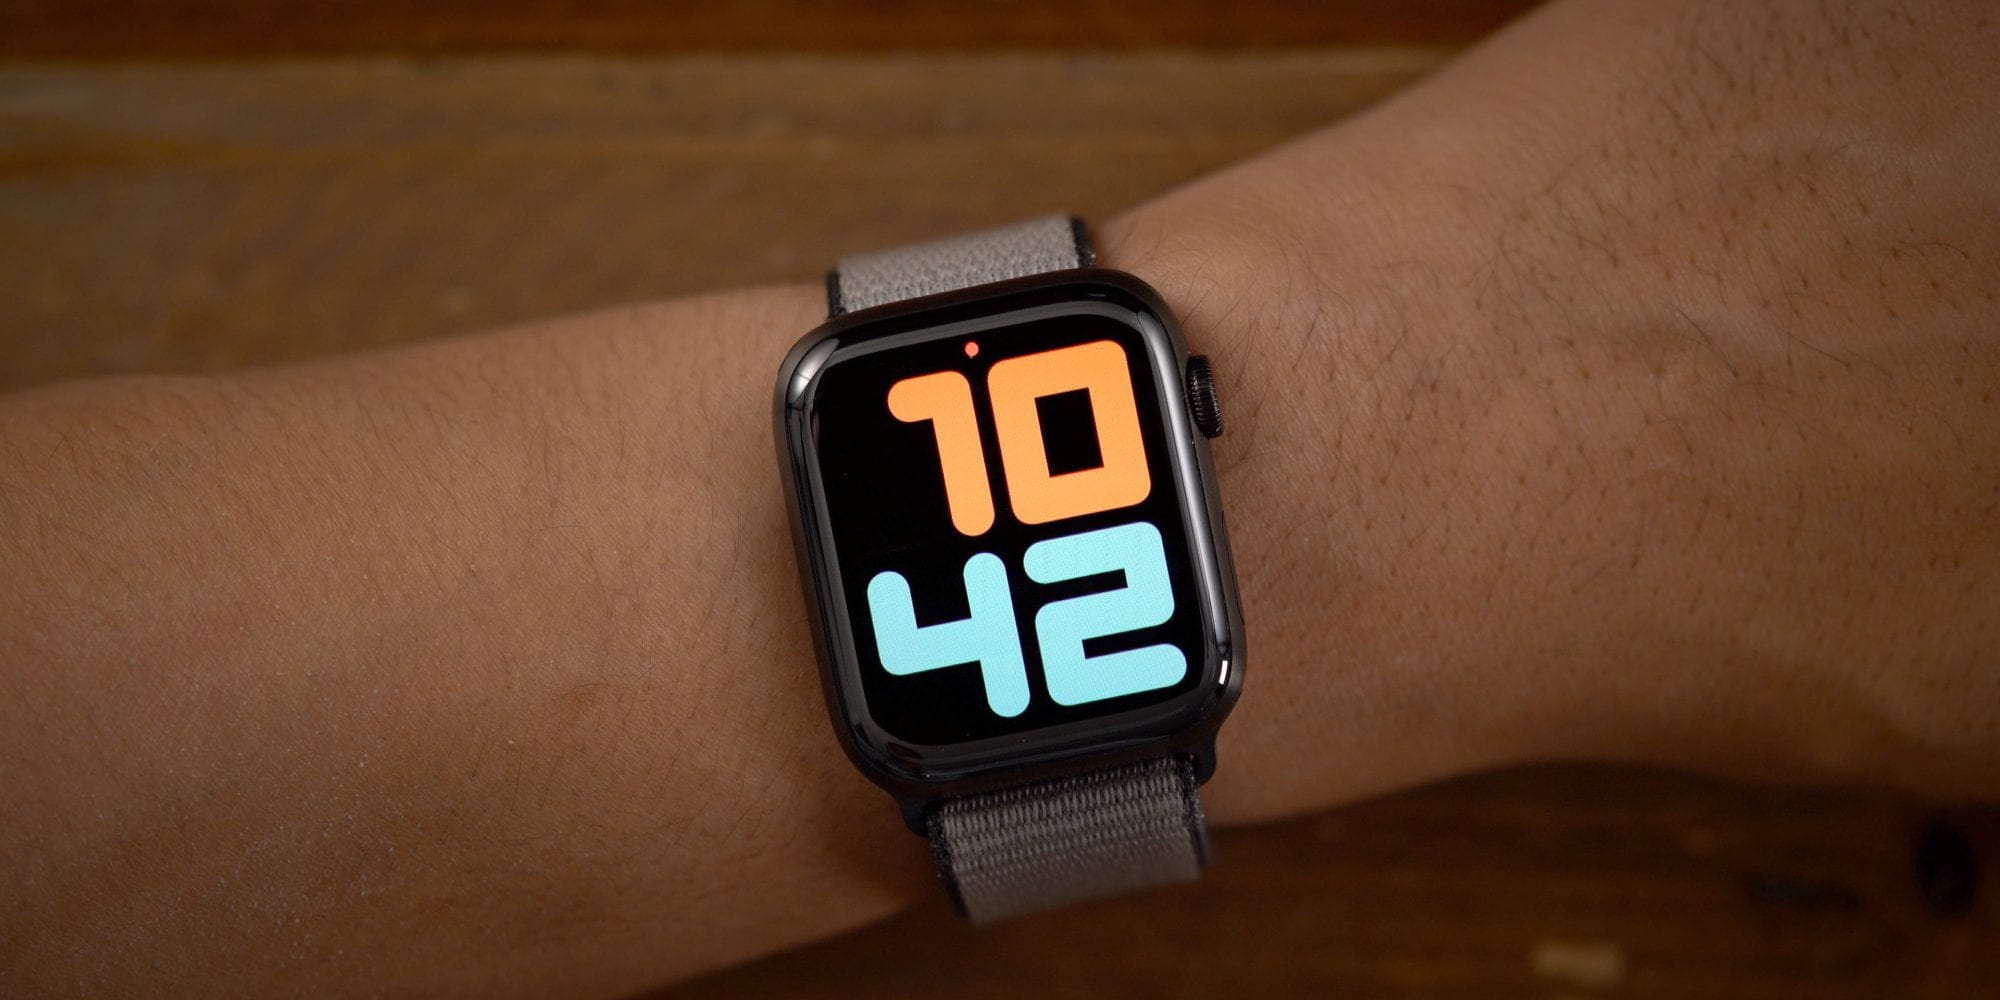 ابل تؤكد على أن تحديث watchOS 7 لن يدعم ساعات Series 1 وSeries 2 الذكية #WWDC2020